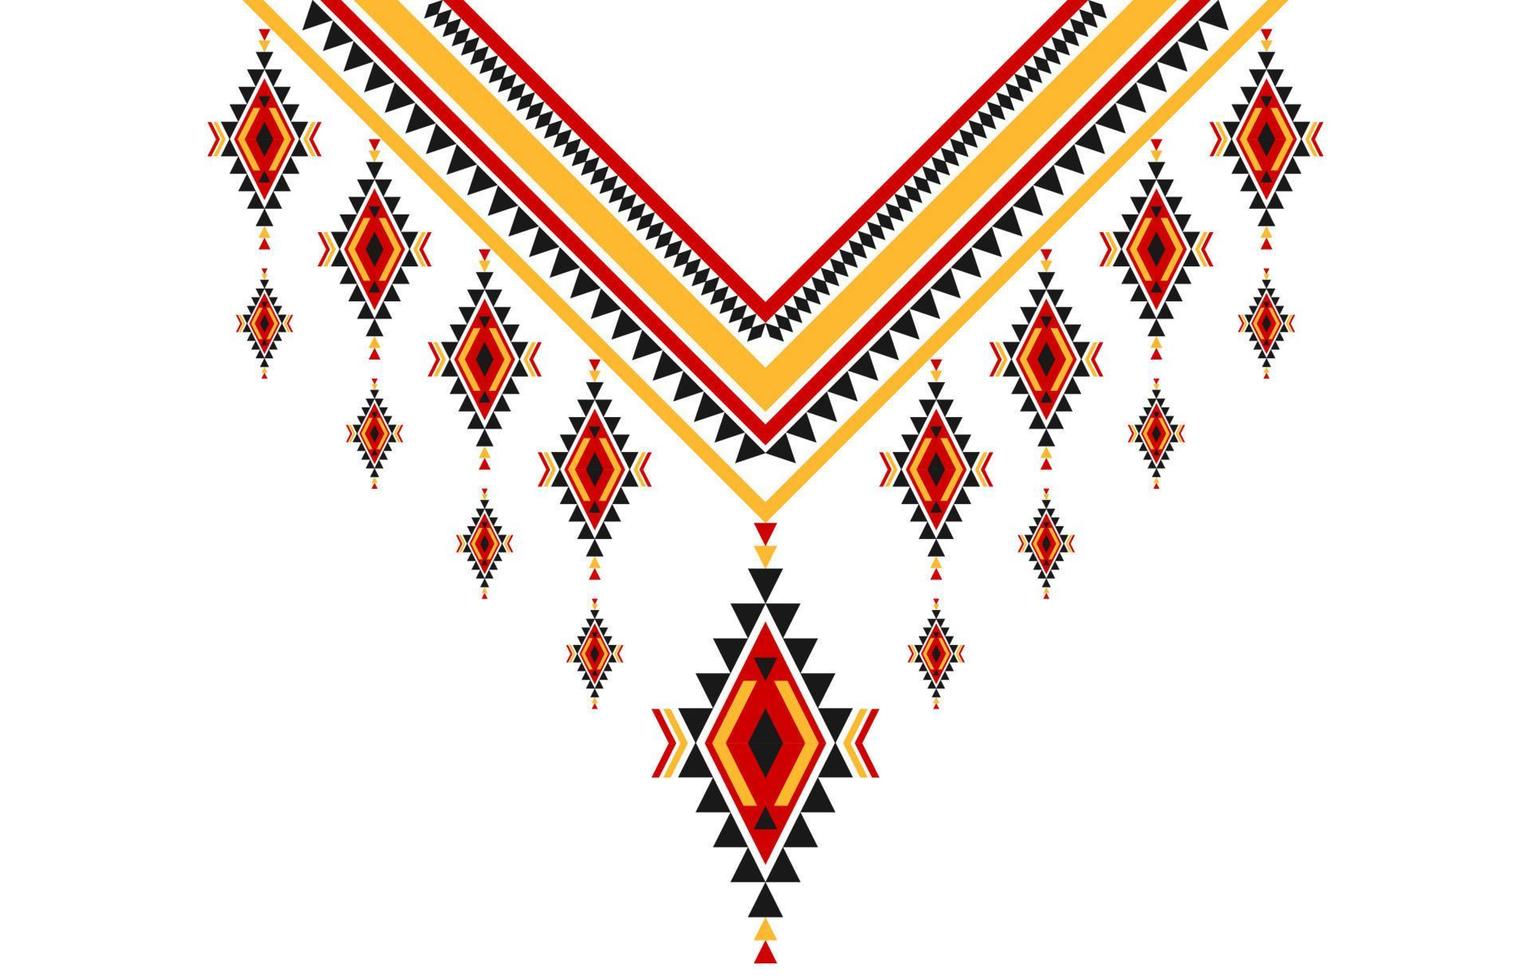 geométrico étnico oriental modelo tradicional. tribal collar bordado. azteca ornamento impresión. americano, mexicano estilo. vector